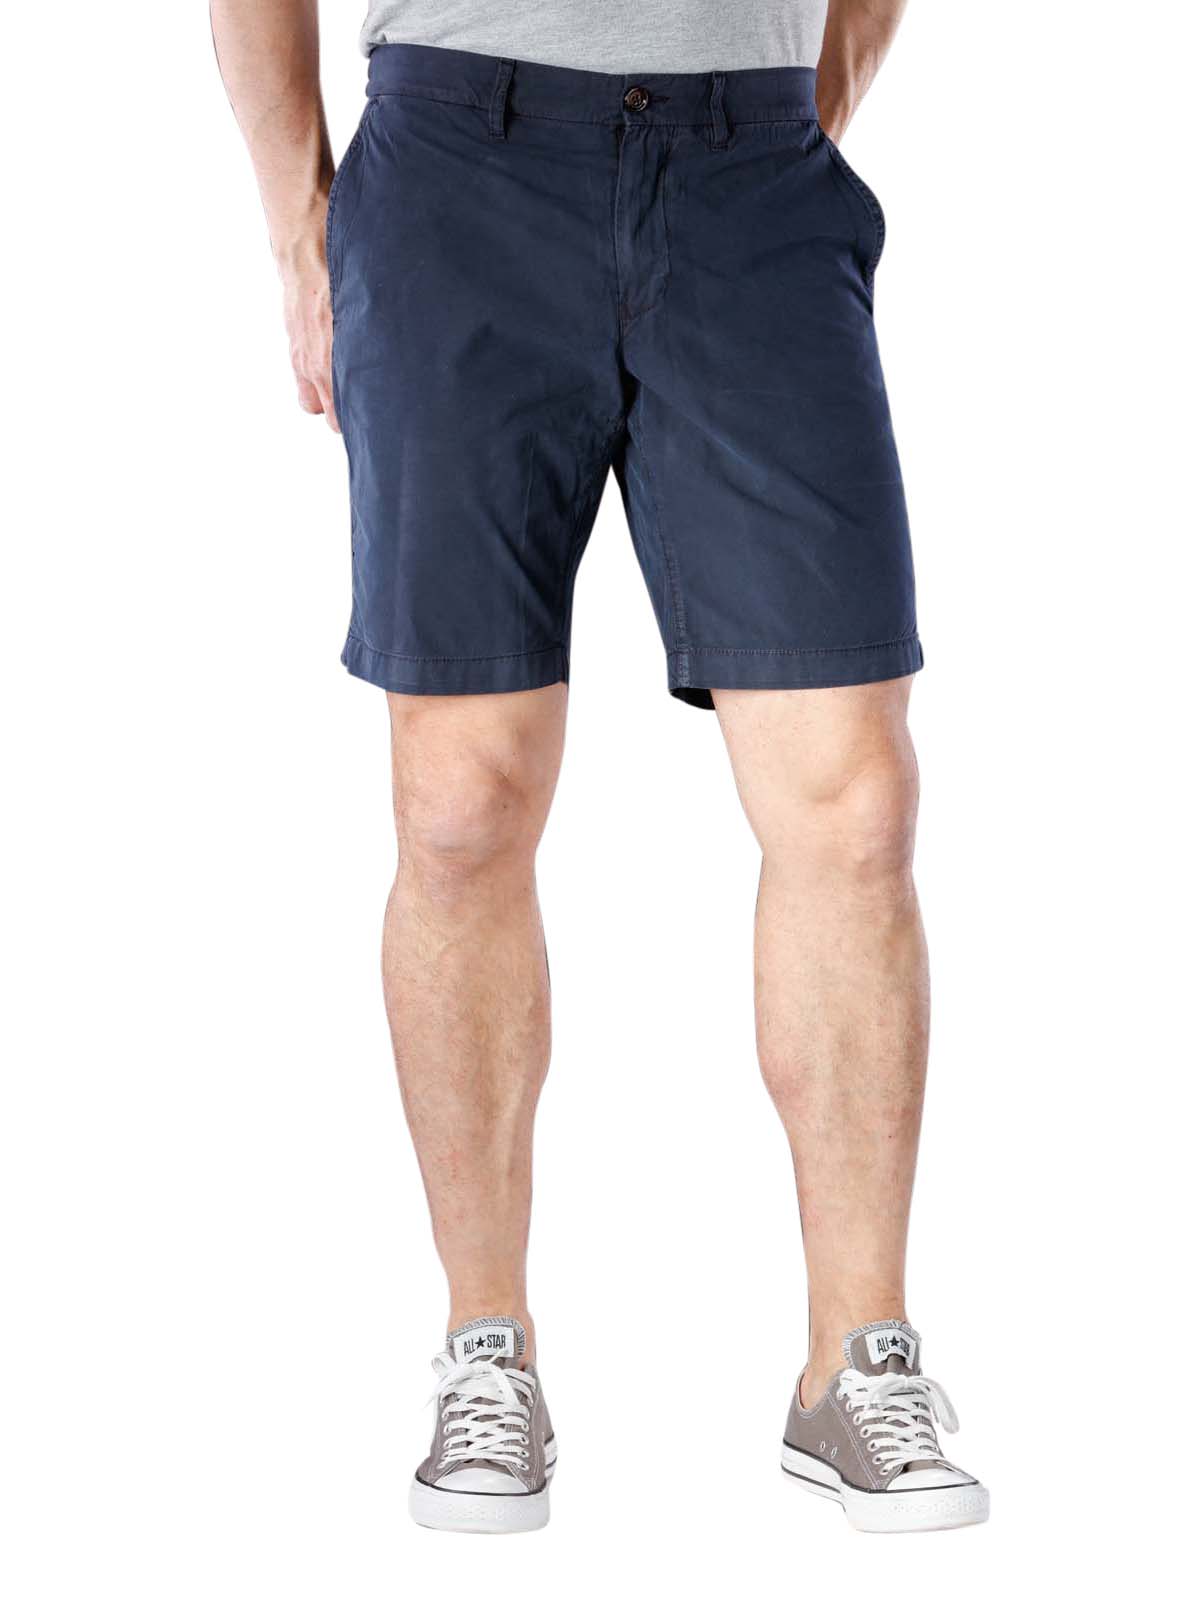 hilfiger brooklyn shorts